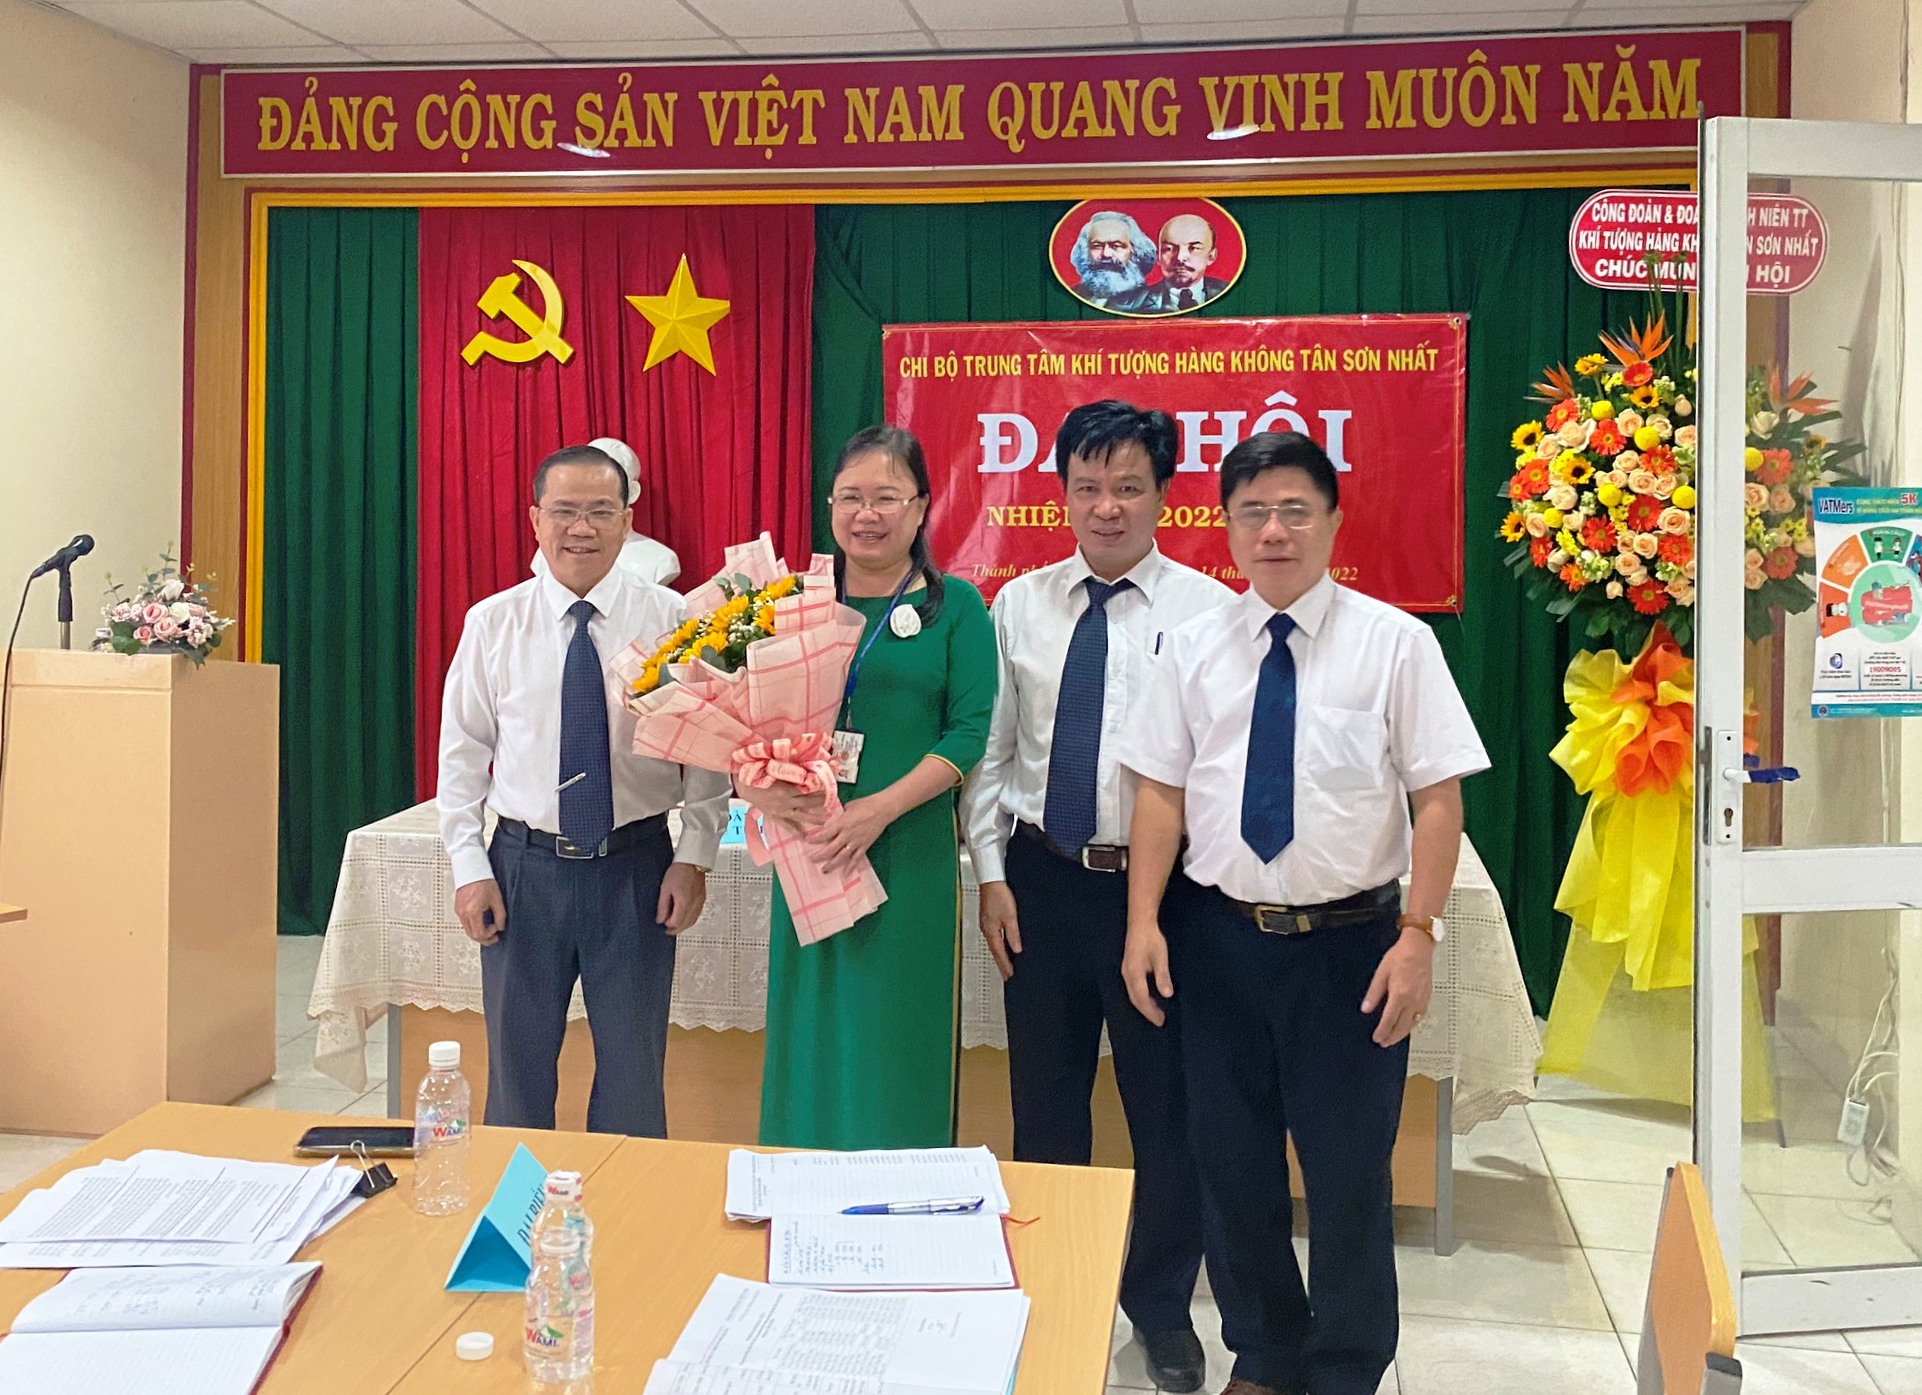 Chi bộ Trung tâm Khí tượng hàng không Tân Sơn Nhất tổ chức Đại hội Chi bộ nhiệm kỳ 2022 – 2025